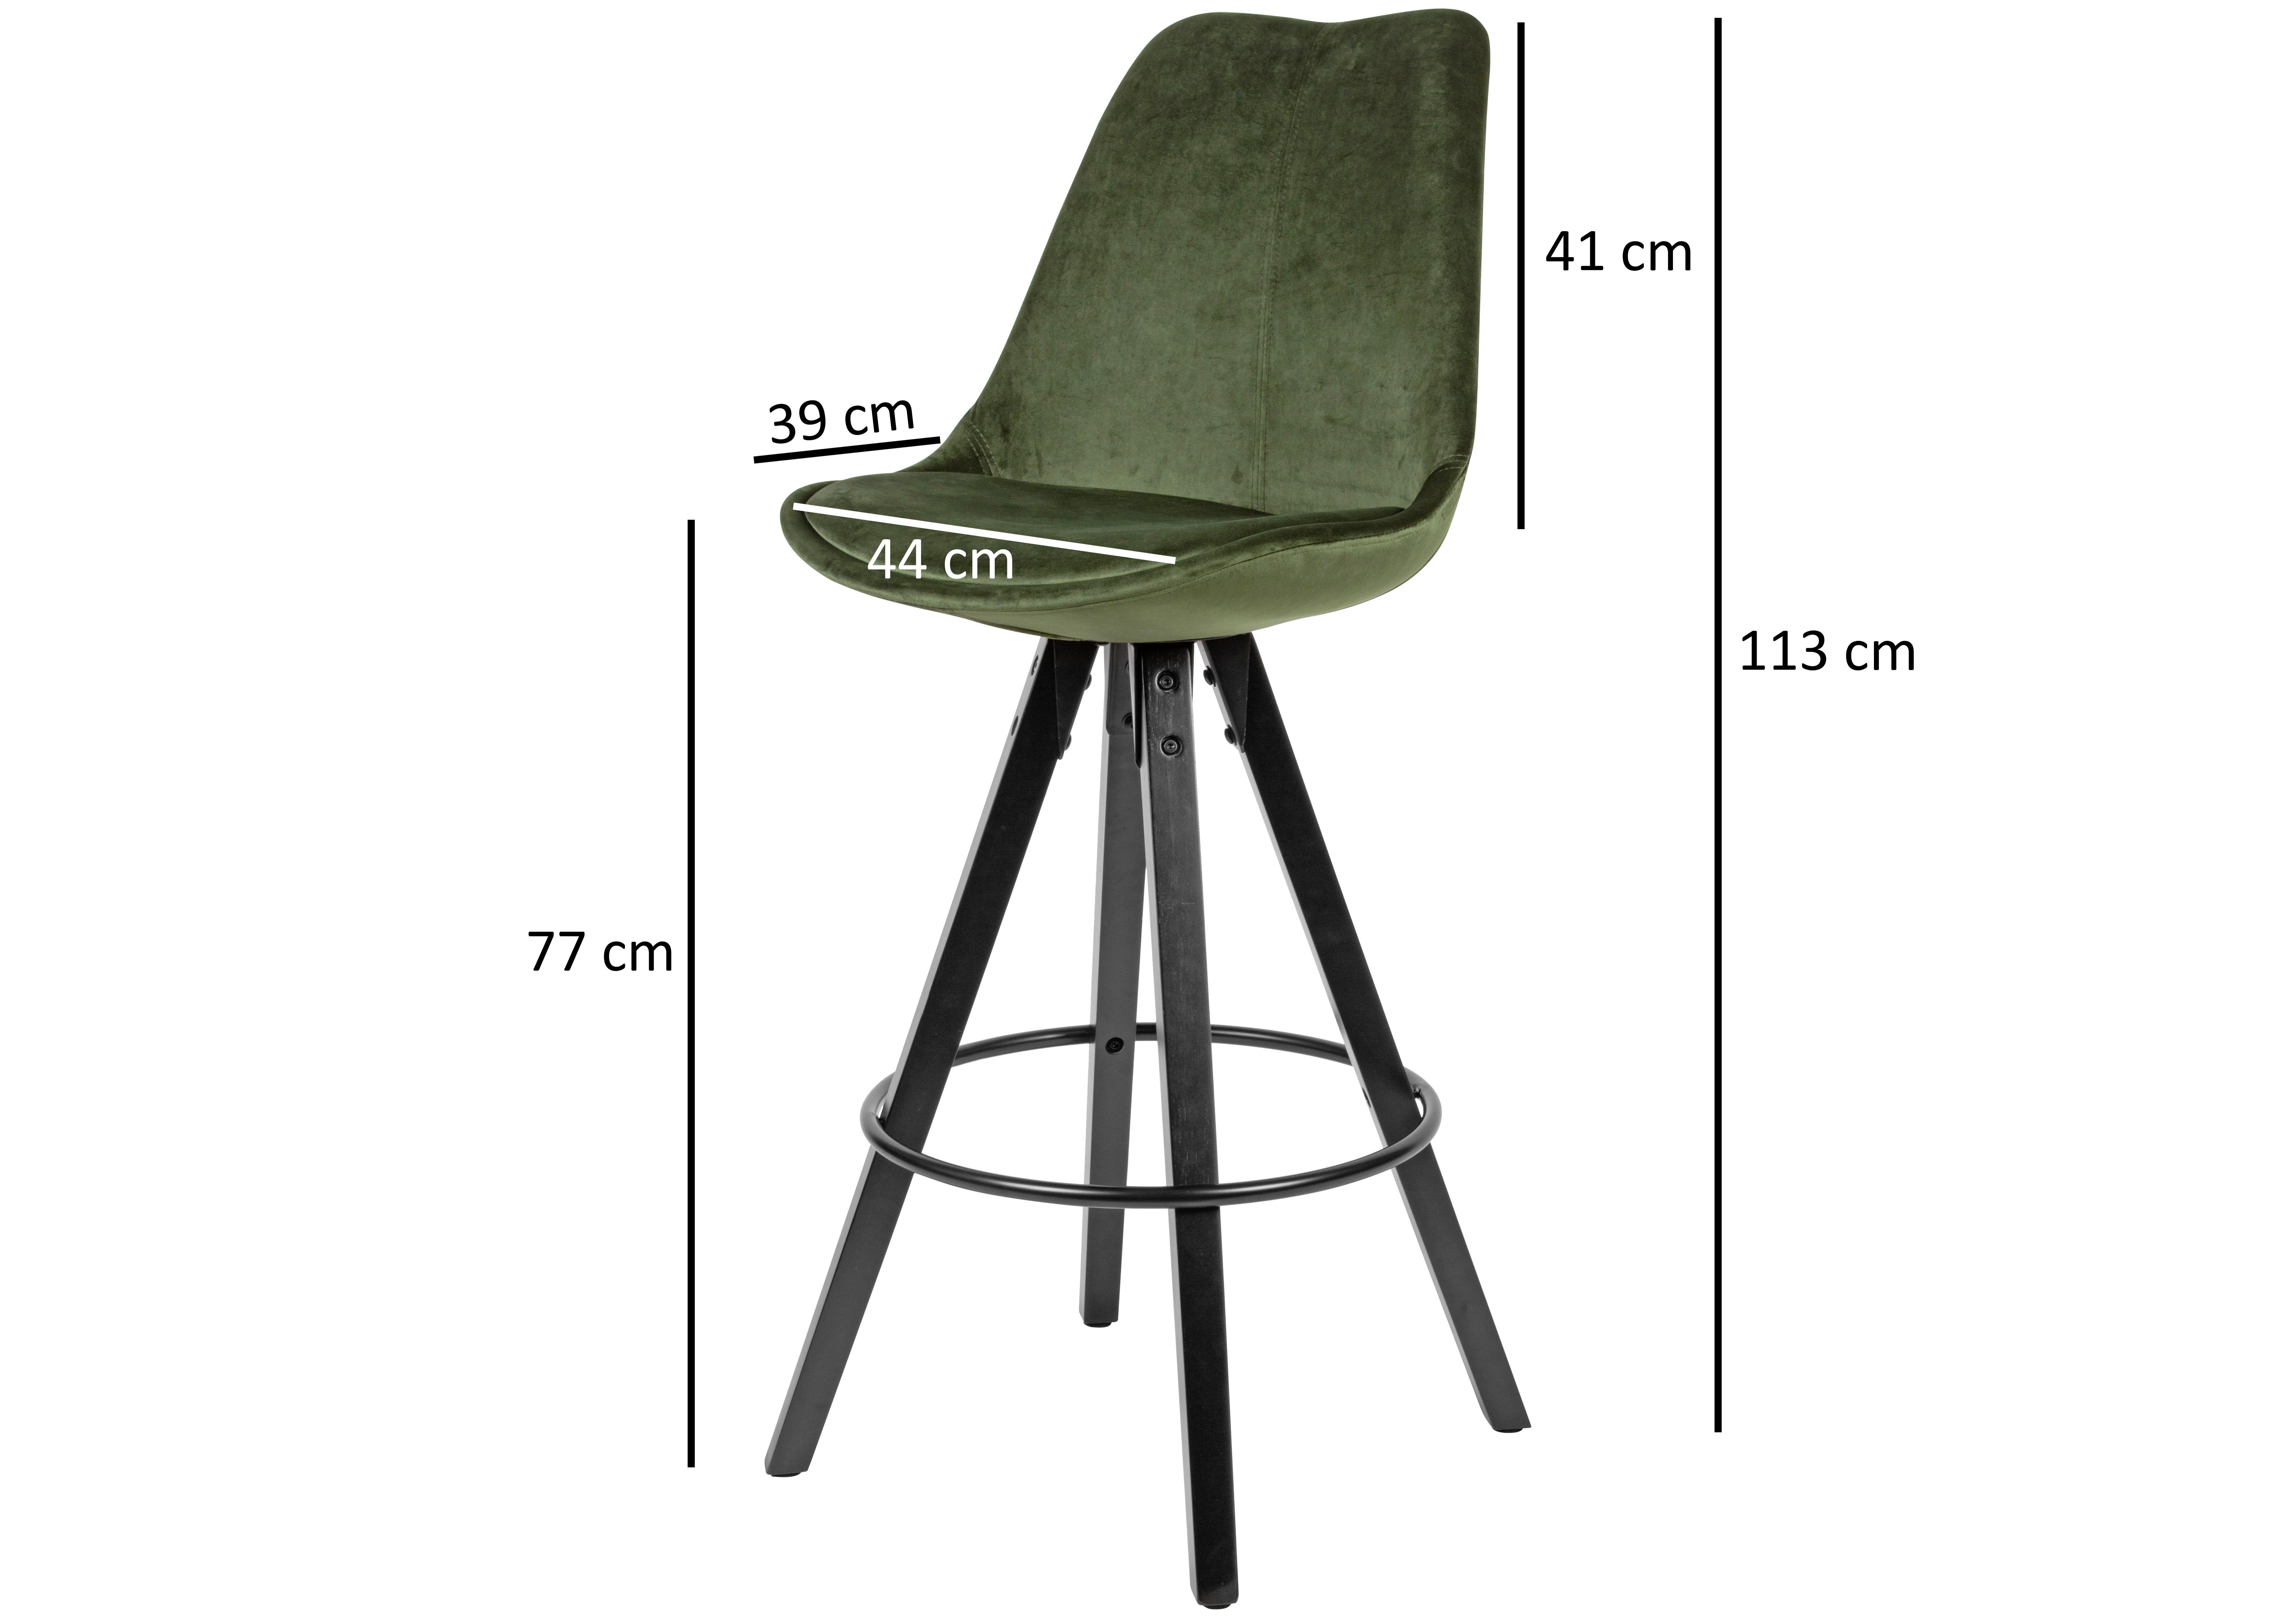 BARSTOL SET i grön  - grön/svart, Modern, trä/textil (49/113/49cm) - MID.YOU